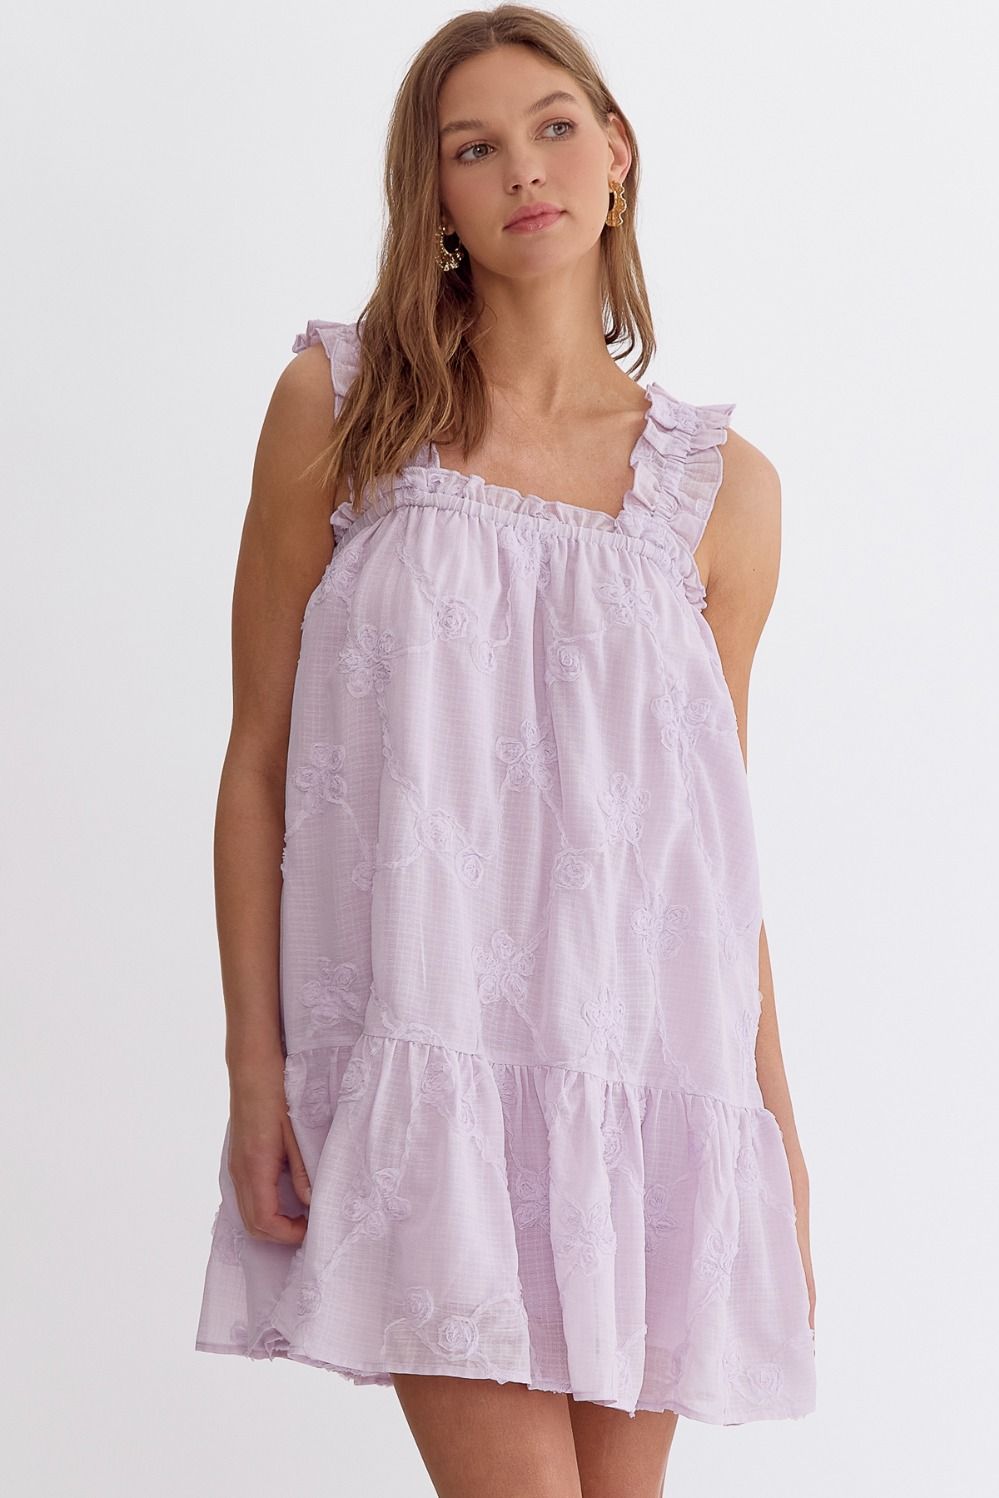 ENTRO INC Women's Dresses LAVENDER / S Floral Applique Square Neck Mini Dress || David's Clothing D22428